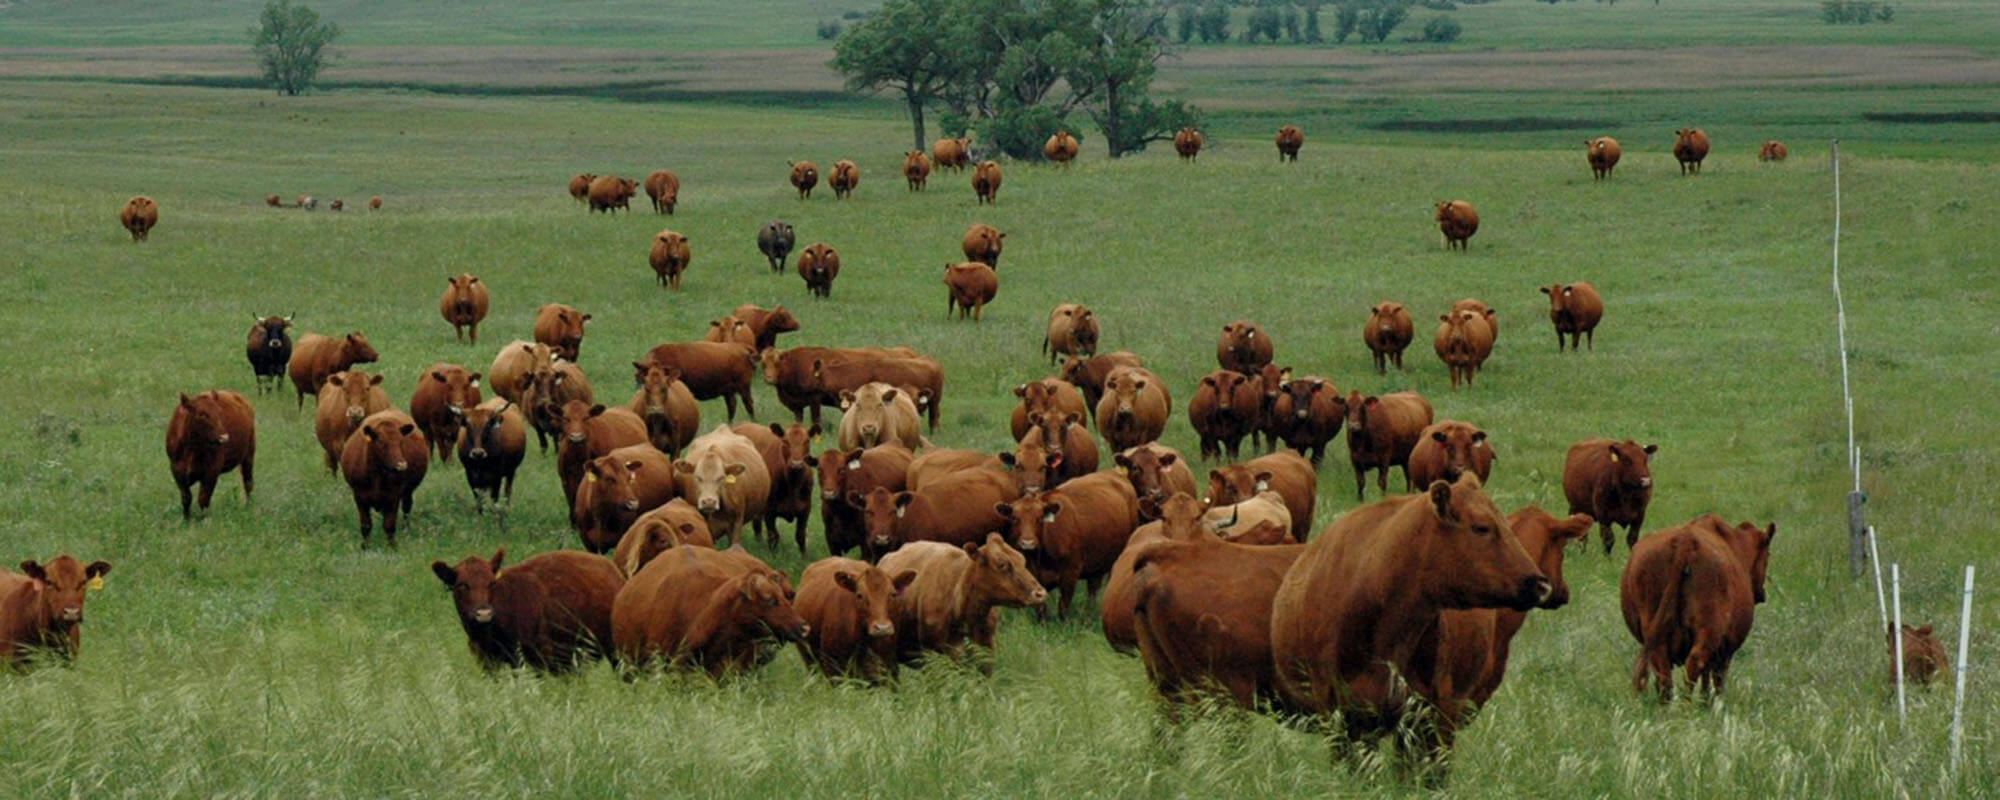 pasture full of cattle